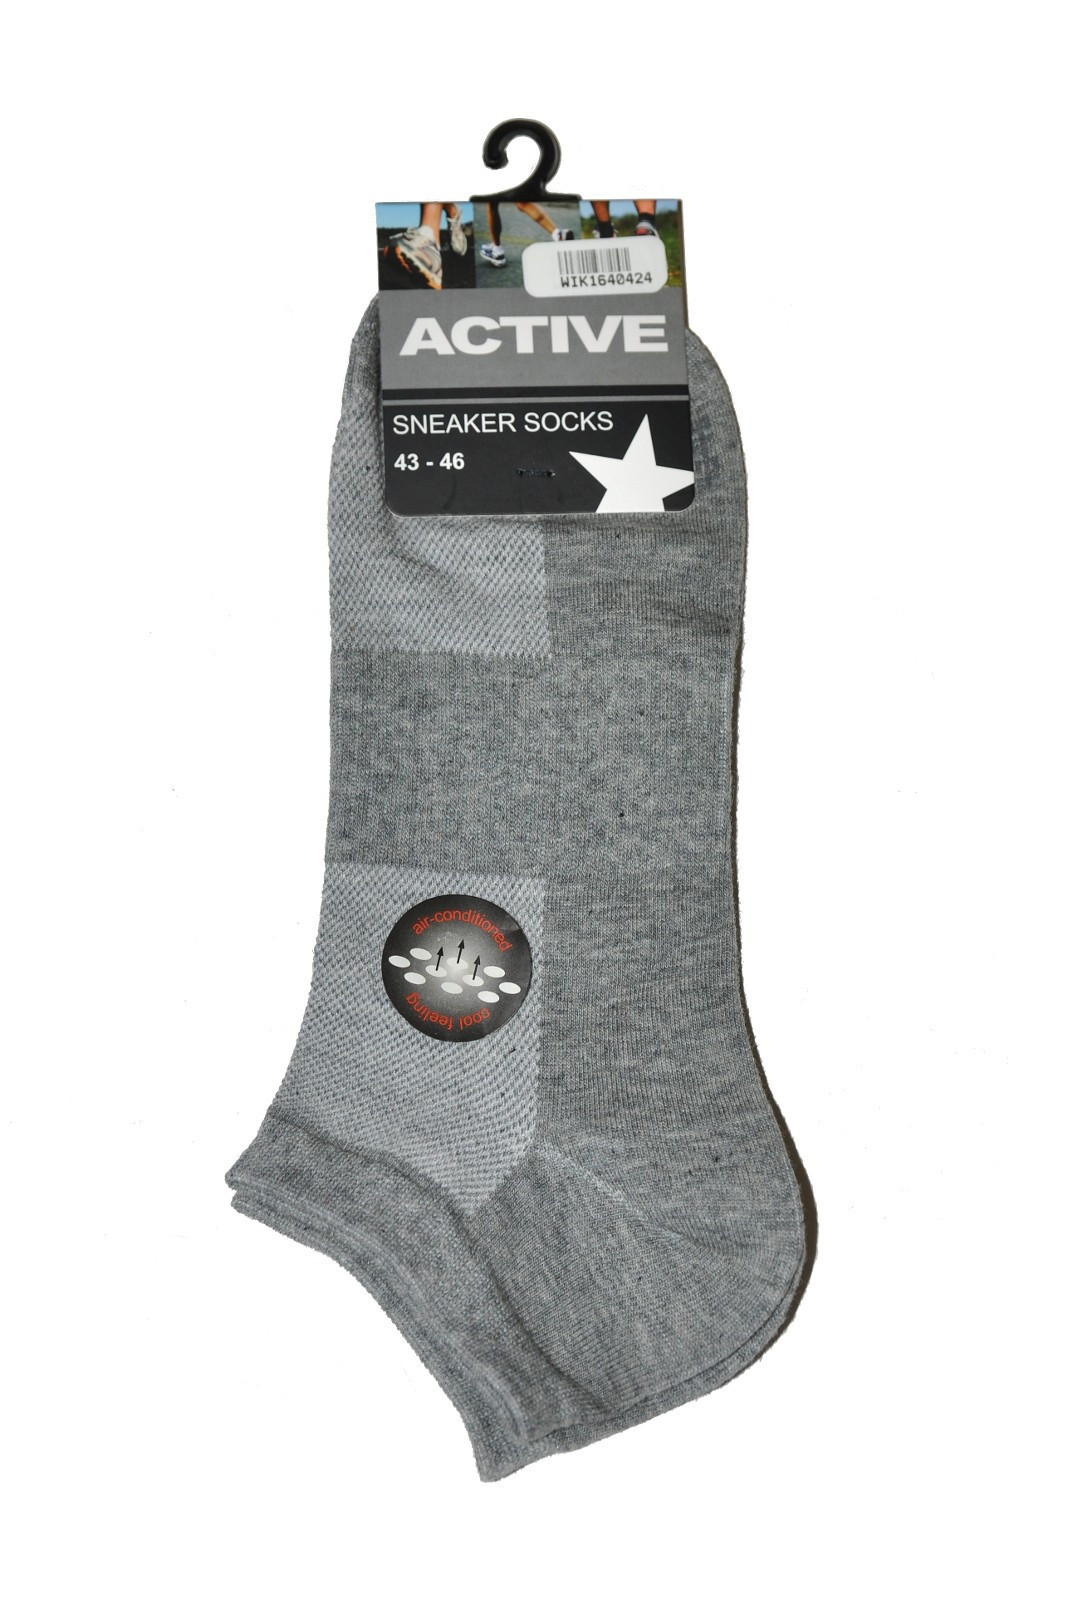 Pánské ponožky WiK 16404 Active 39-46 bílá 43-46